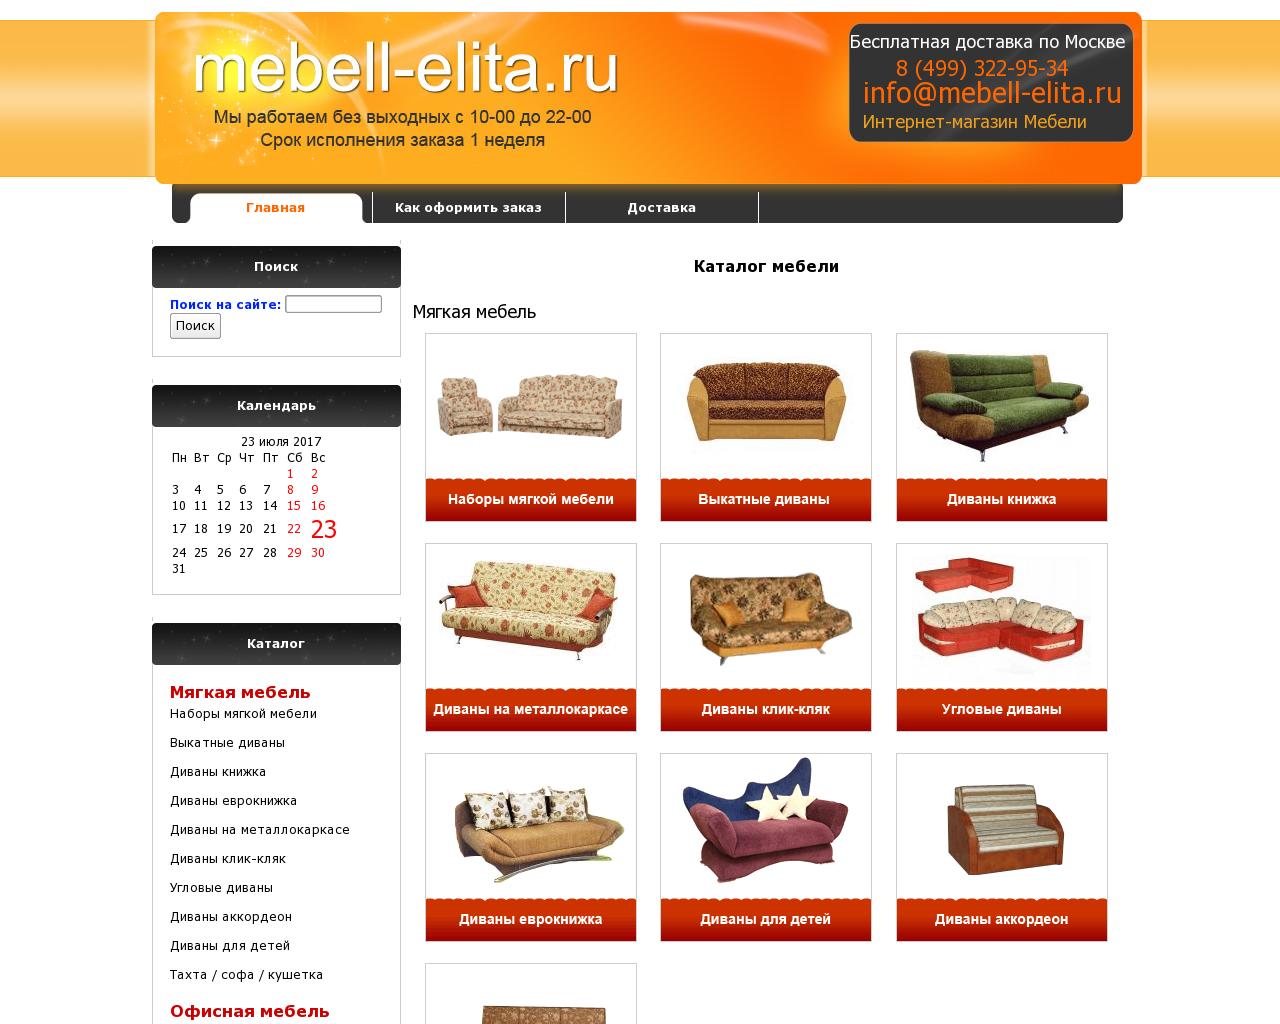 Изображение сайта mebell-elita.ru в разрешении 1280x1024